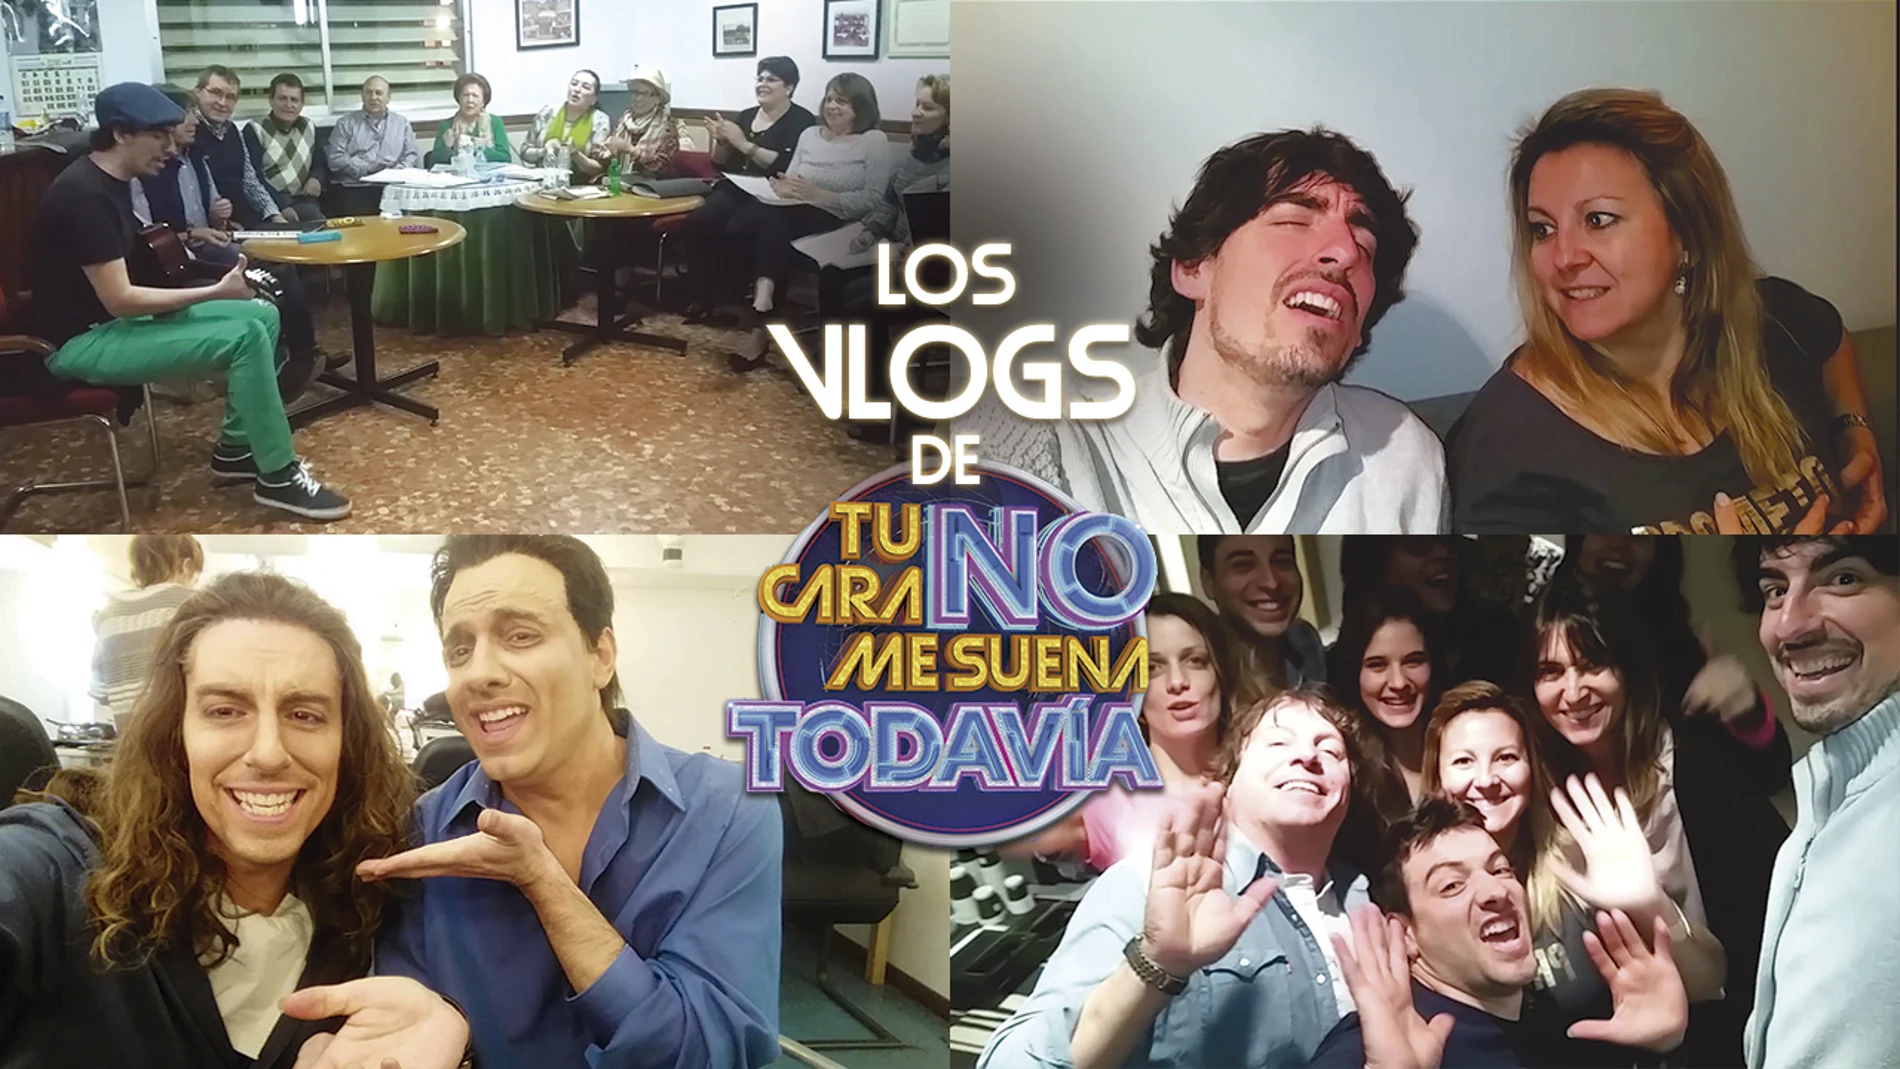 Nacho Lozano se despide de 'Tu cara no me suena todavía' en un emotivo vídeo junto a sus compañeros